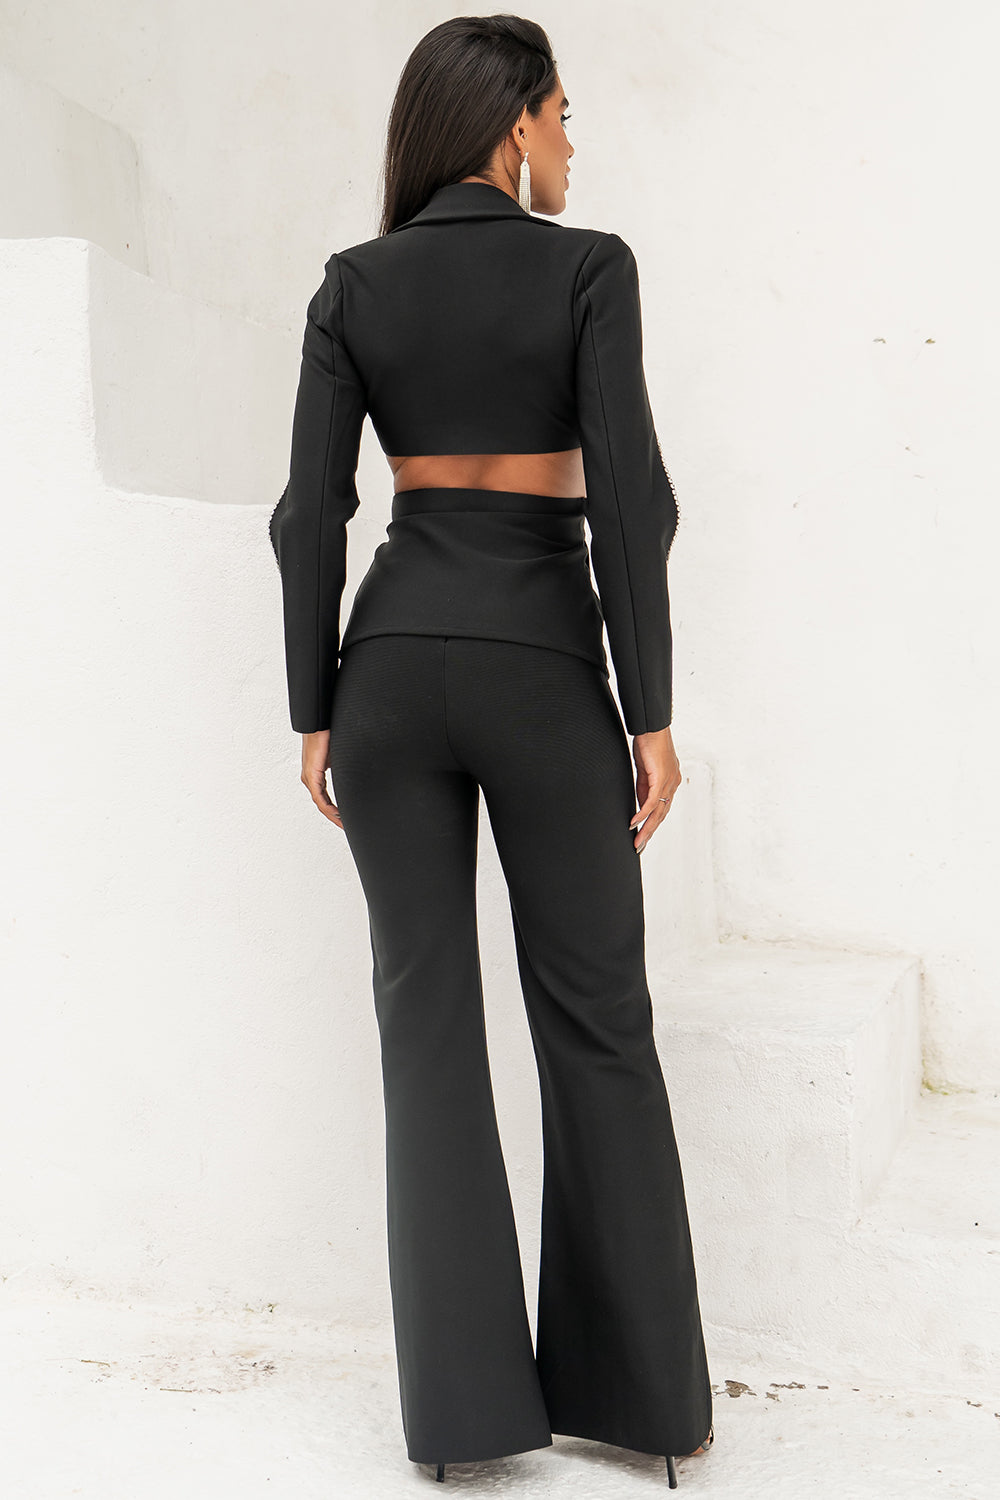 Gabriela Black Fashion Suit